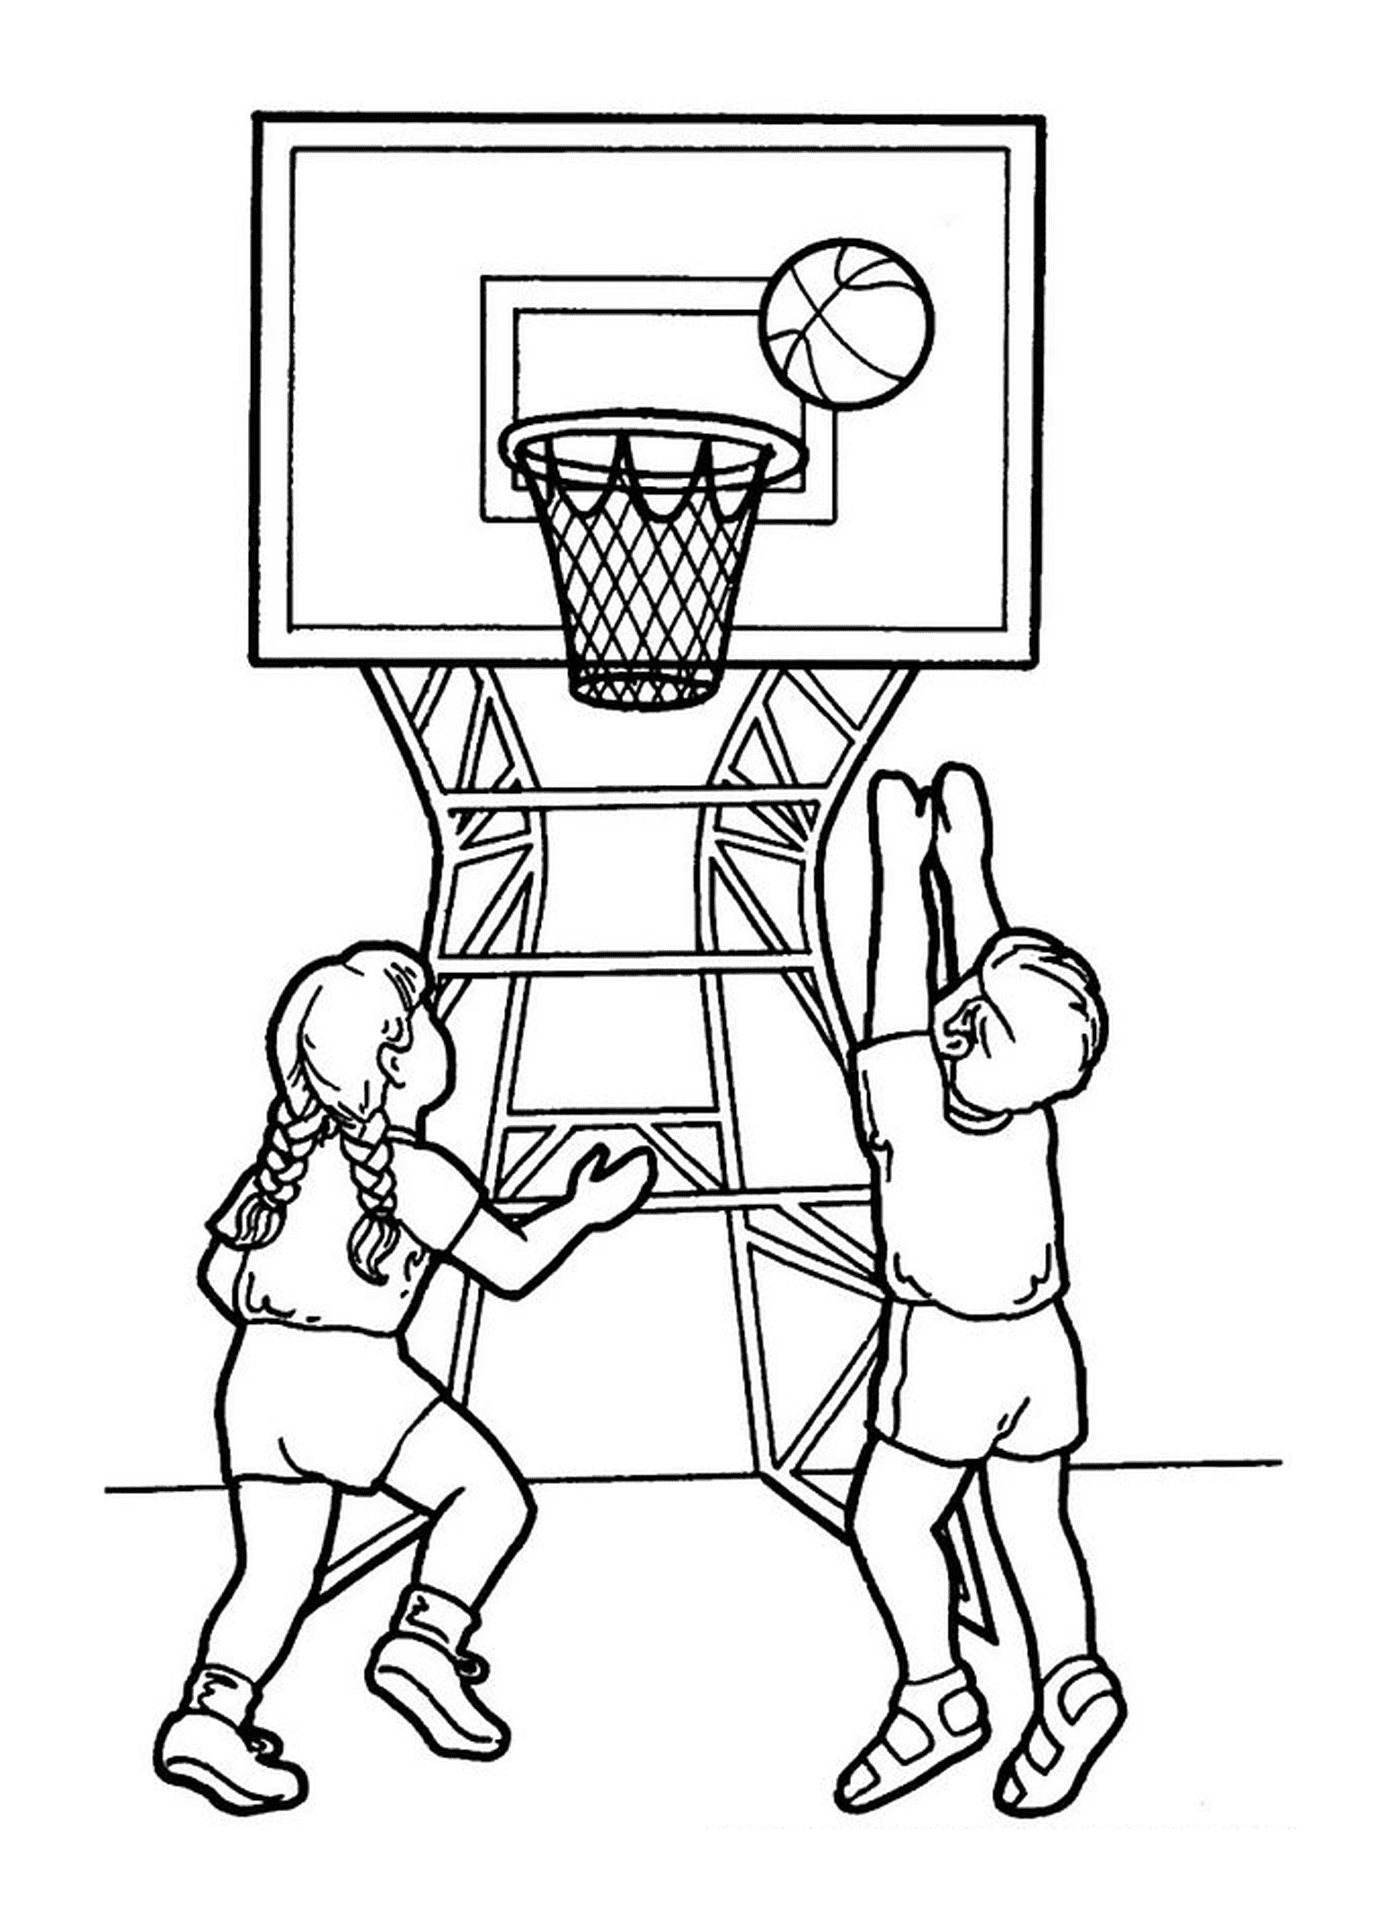  Ein Junge und ein Mädchen spielen Basketball 